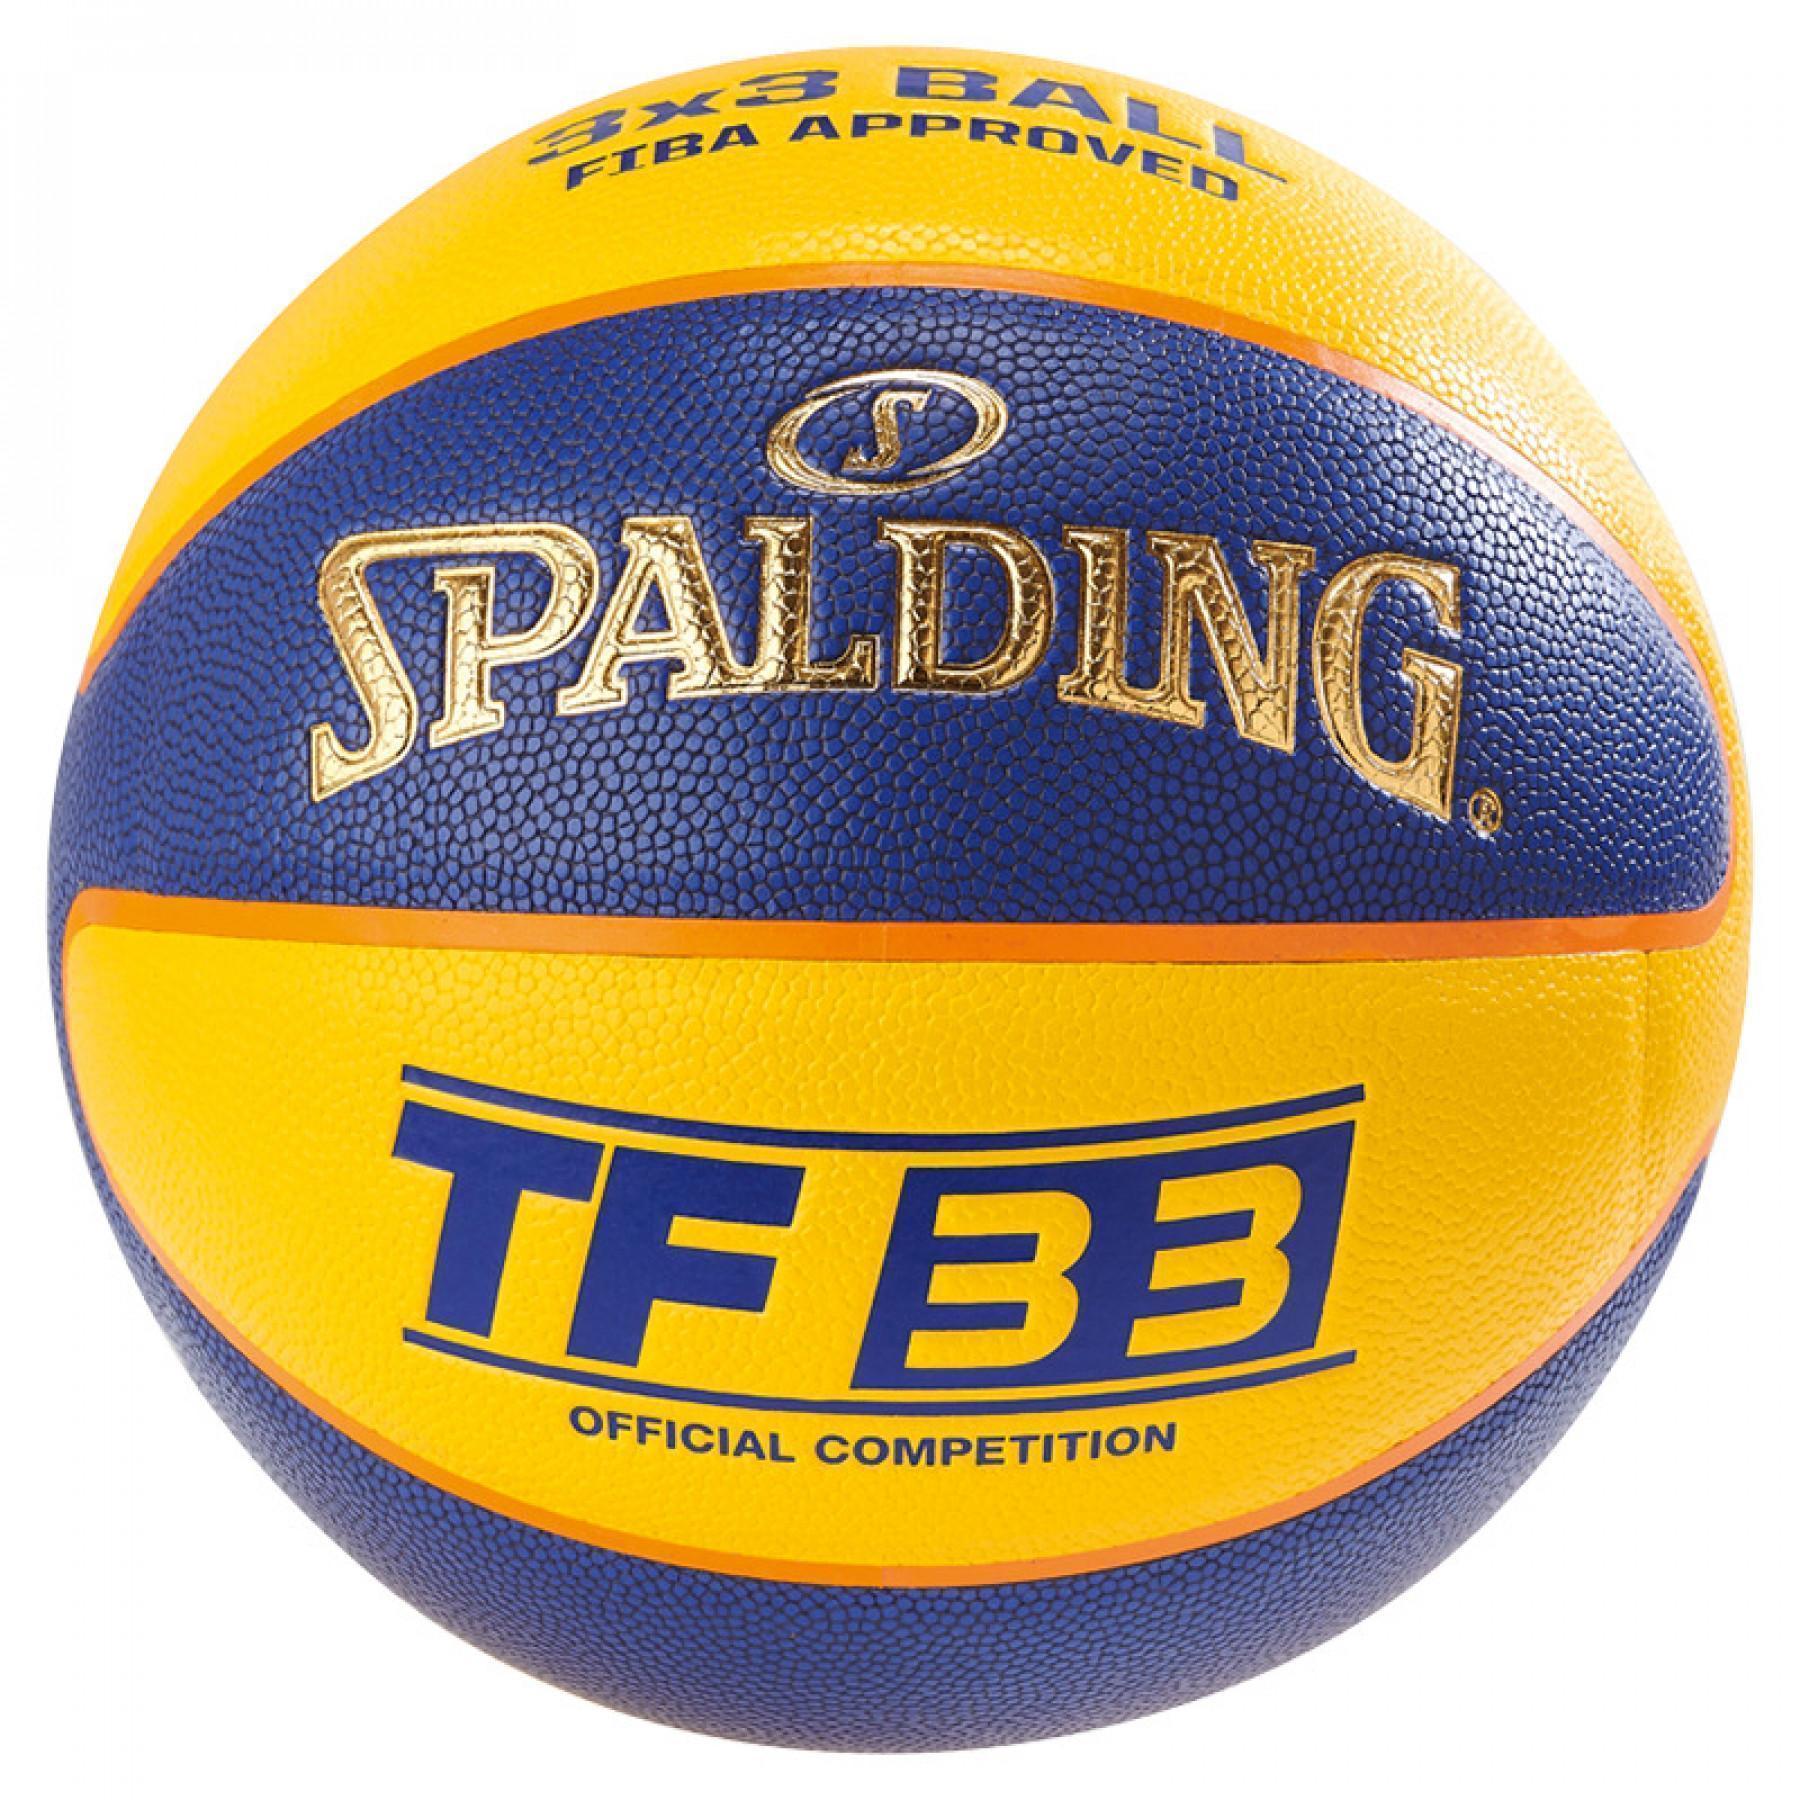 Balon Spalding Tf33 Official Game (76-257z)